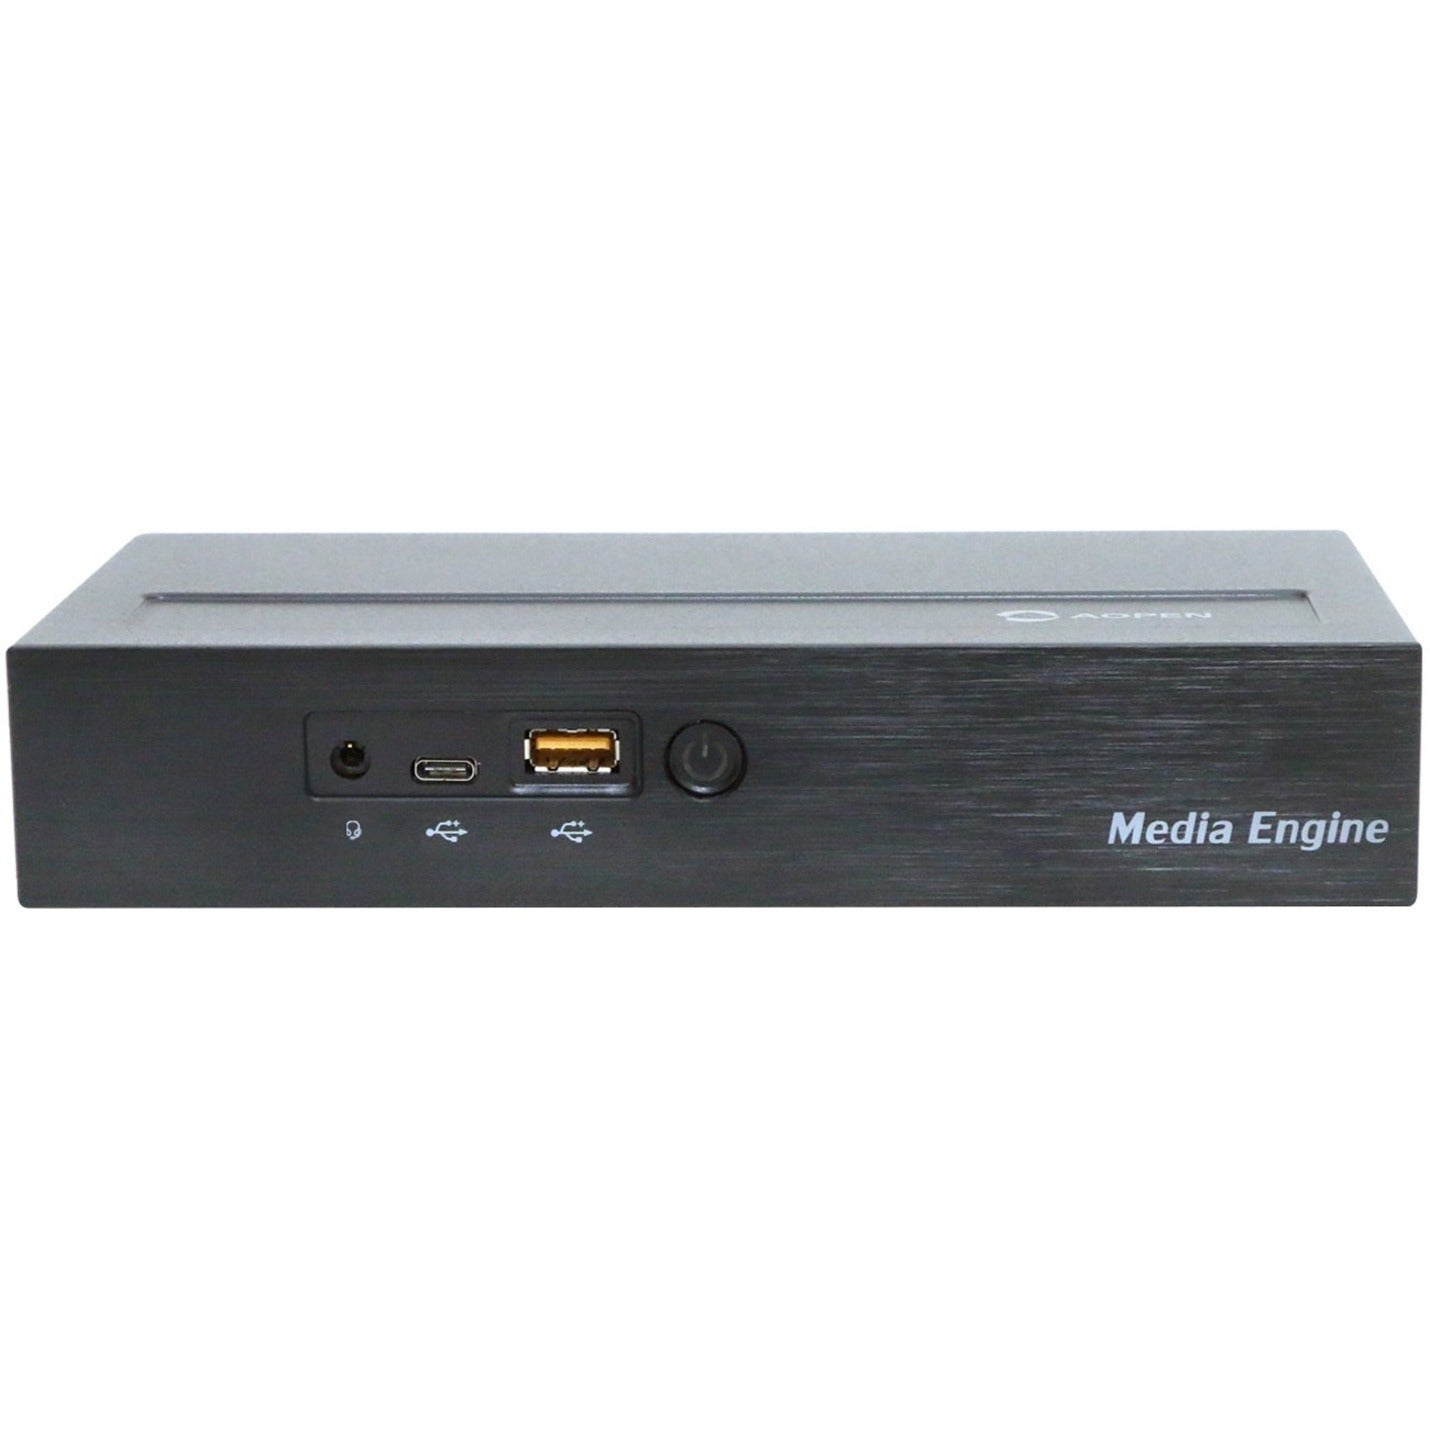 AOpen Media Engine ME57U Digital Signage Appliance